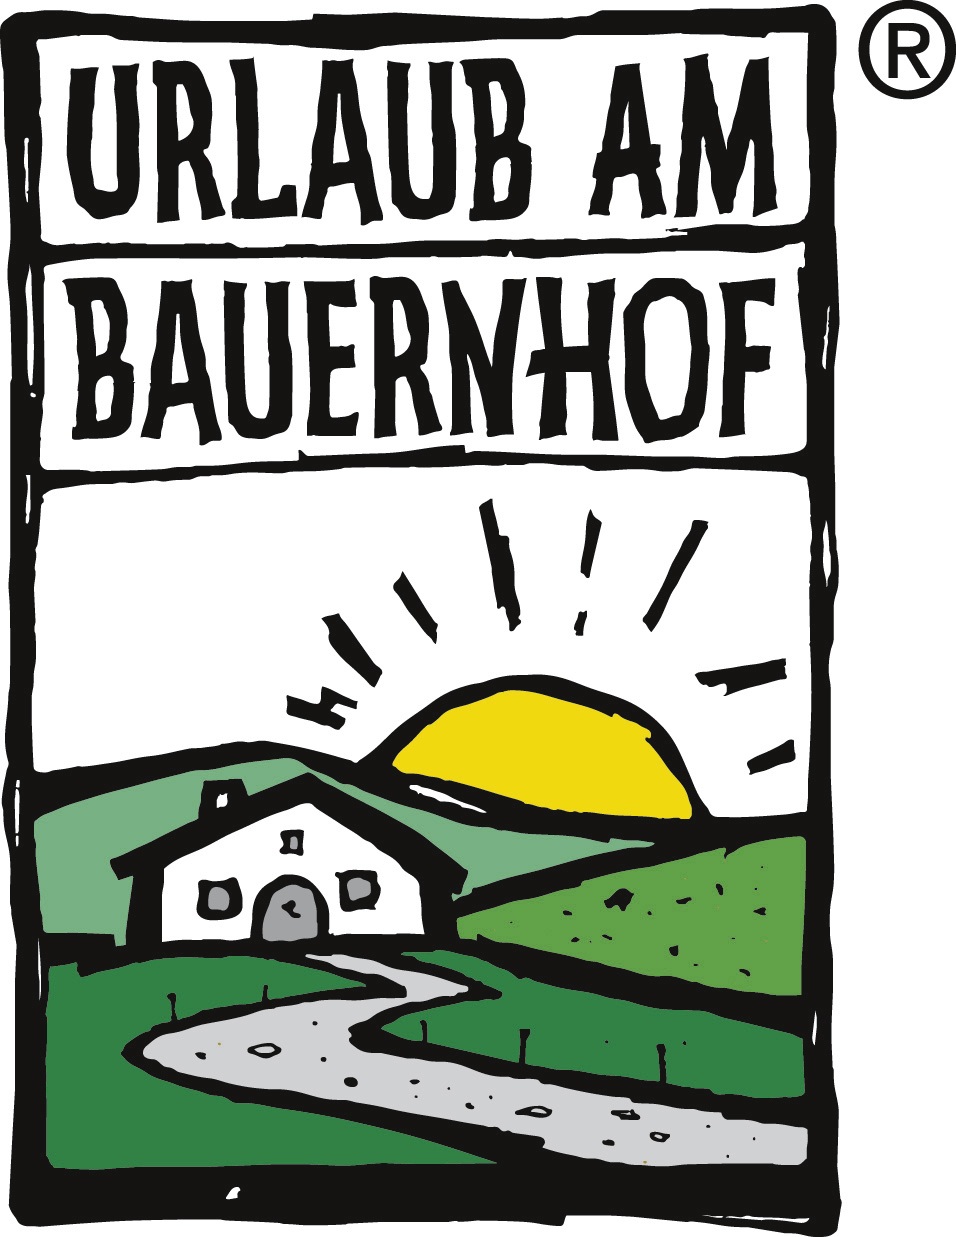 UaB Logo - Urlaub am Bauernhof